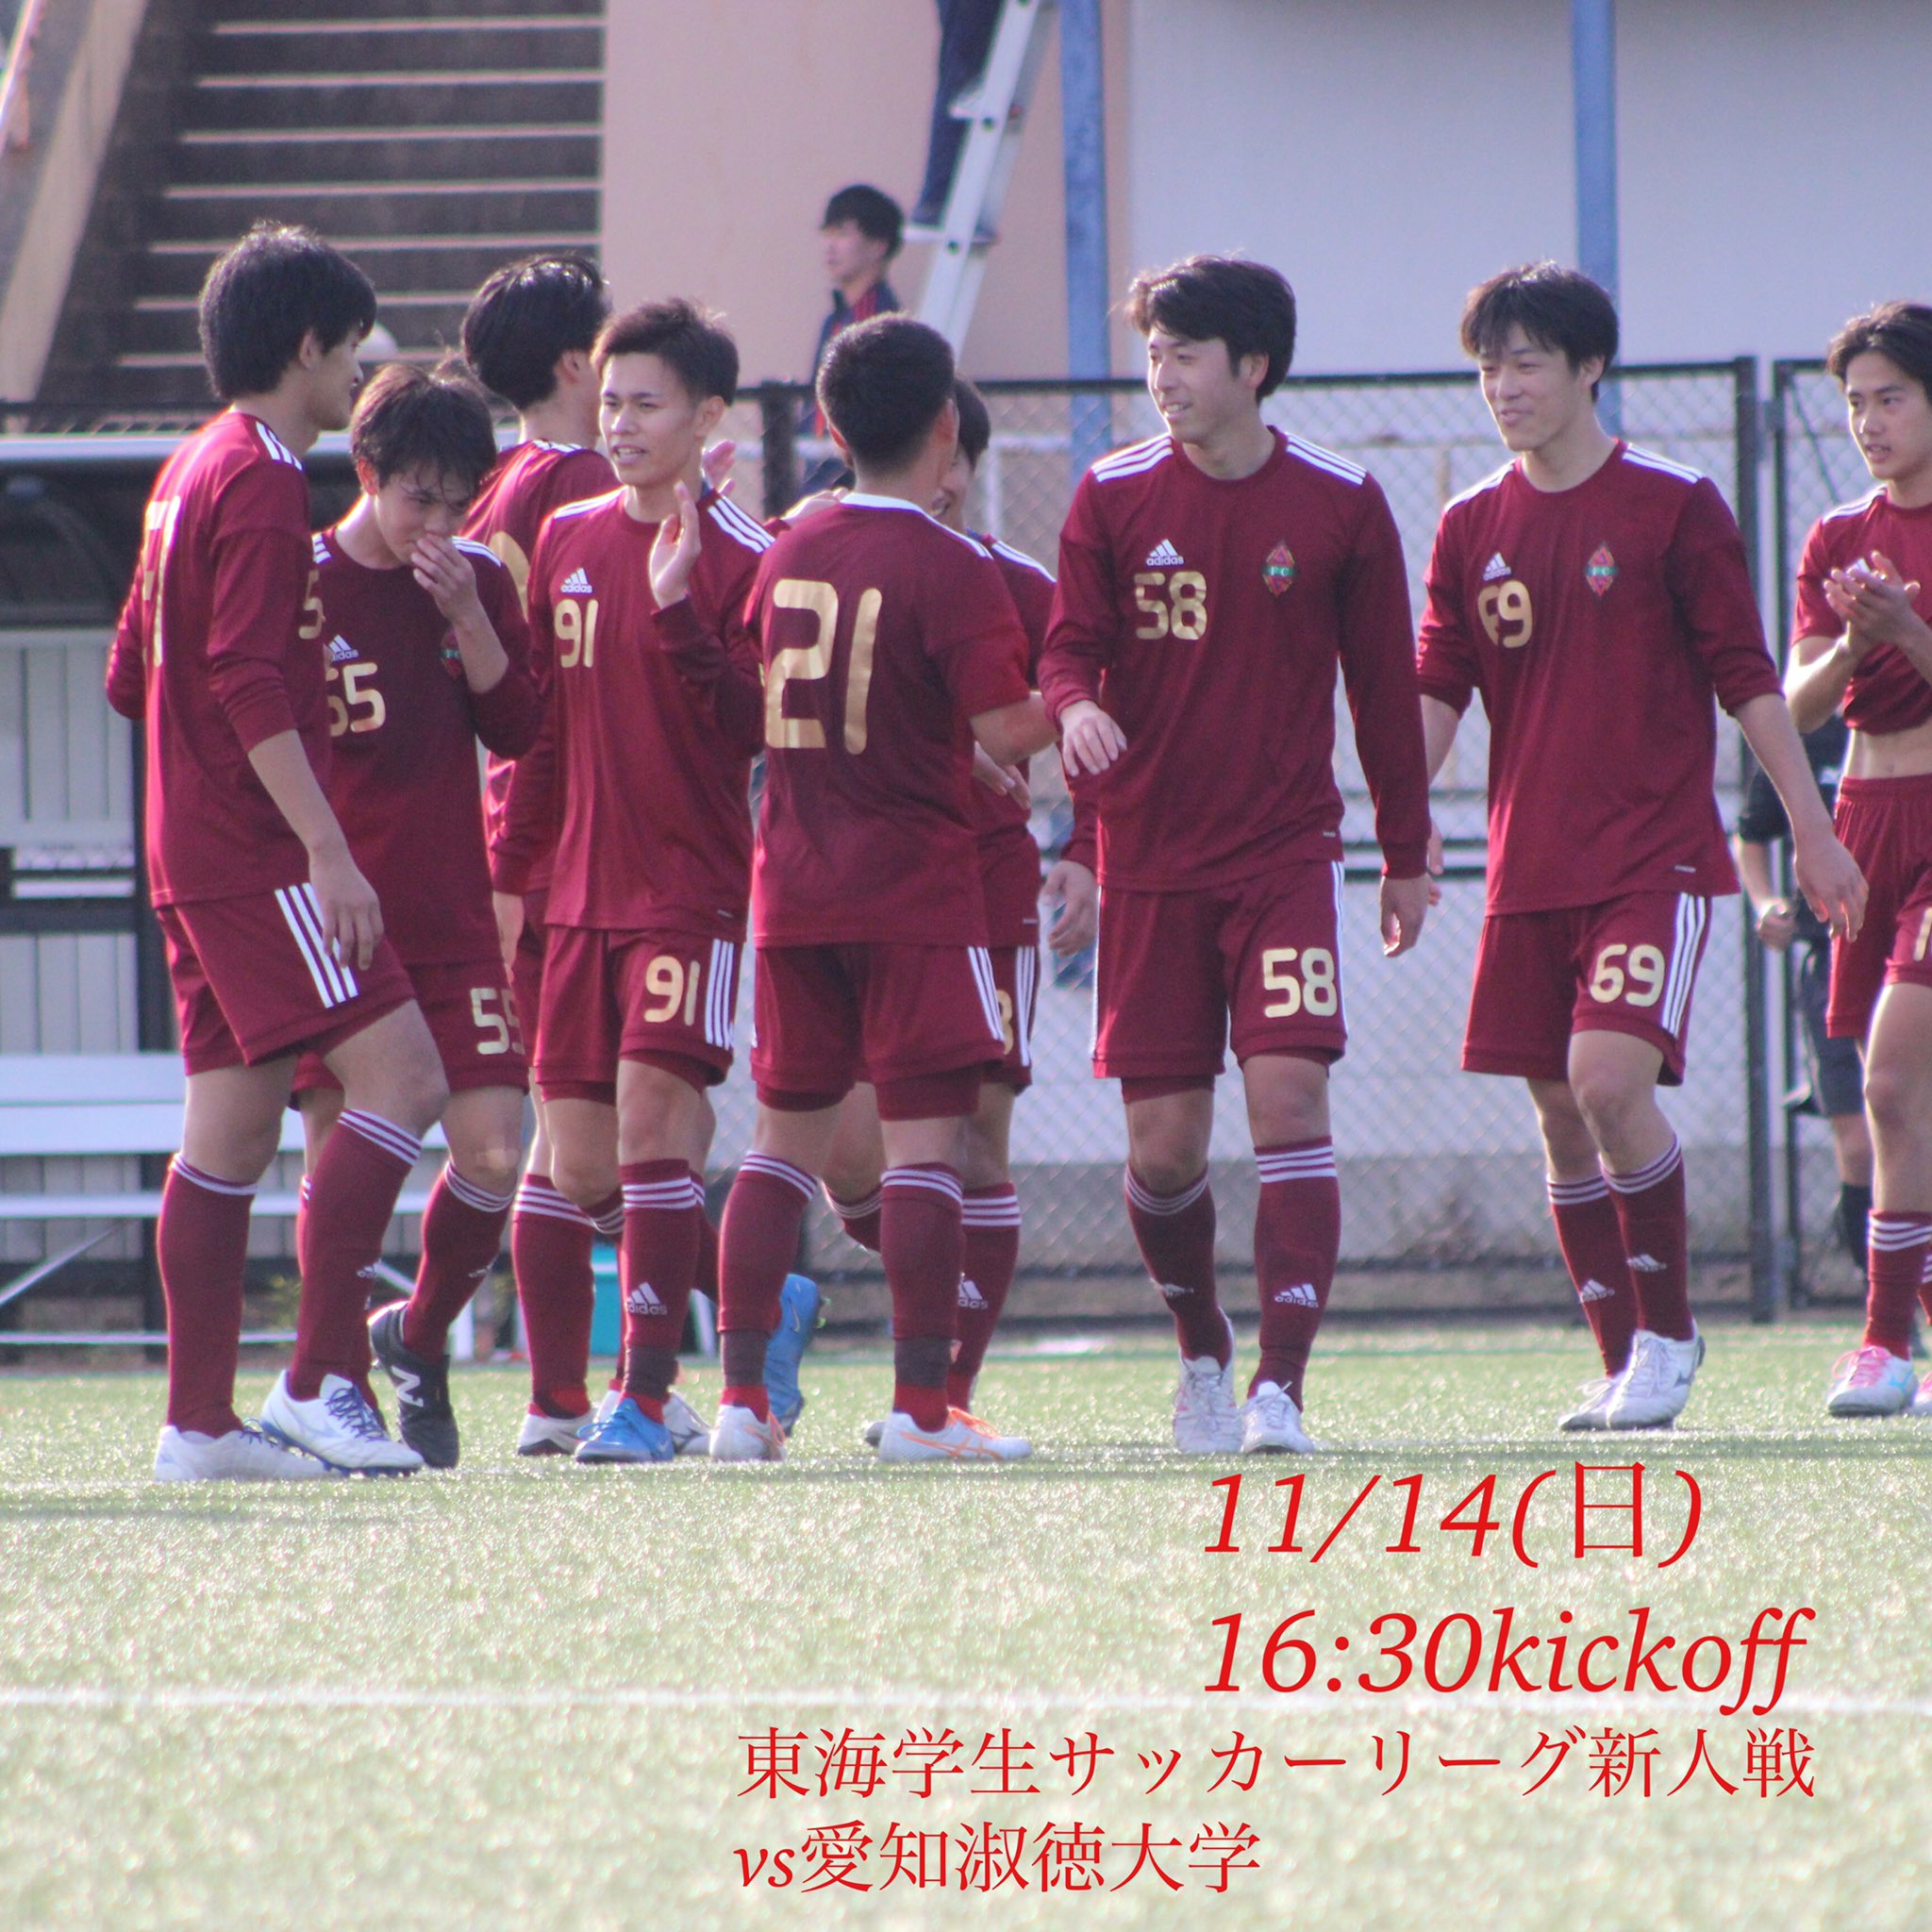 愛知学院大学サッカー部 Aichi Gakuin Twitter